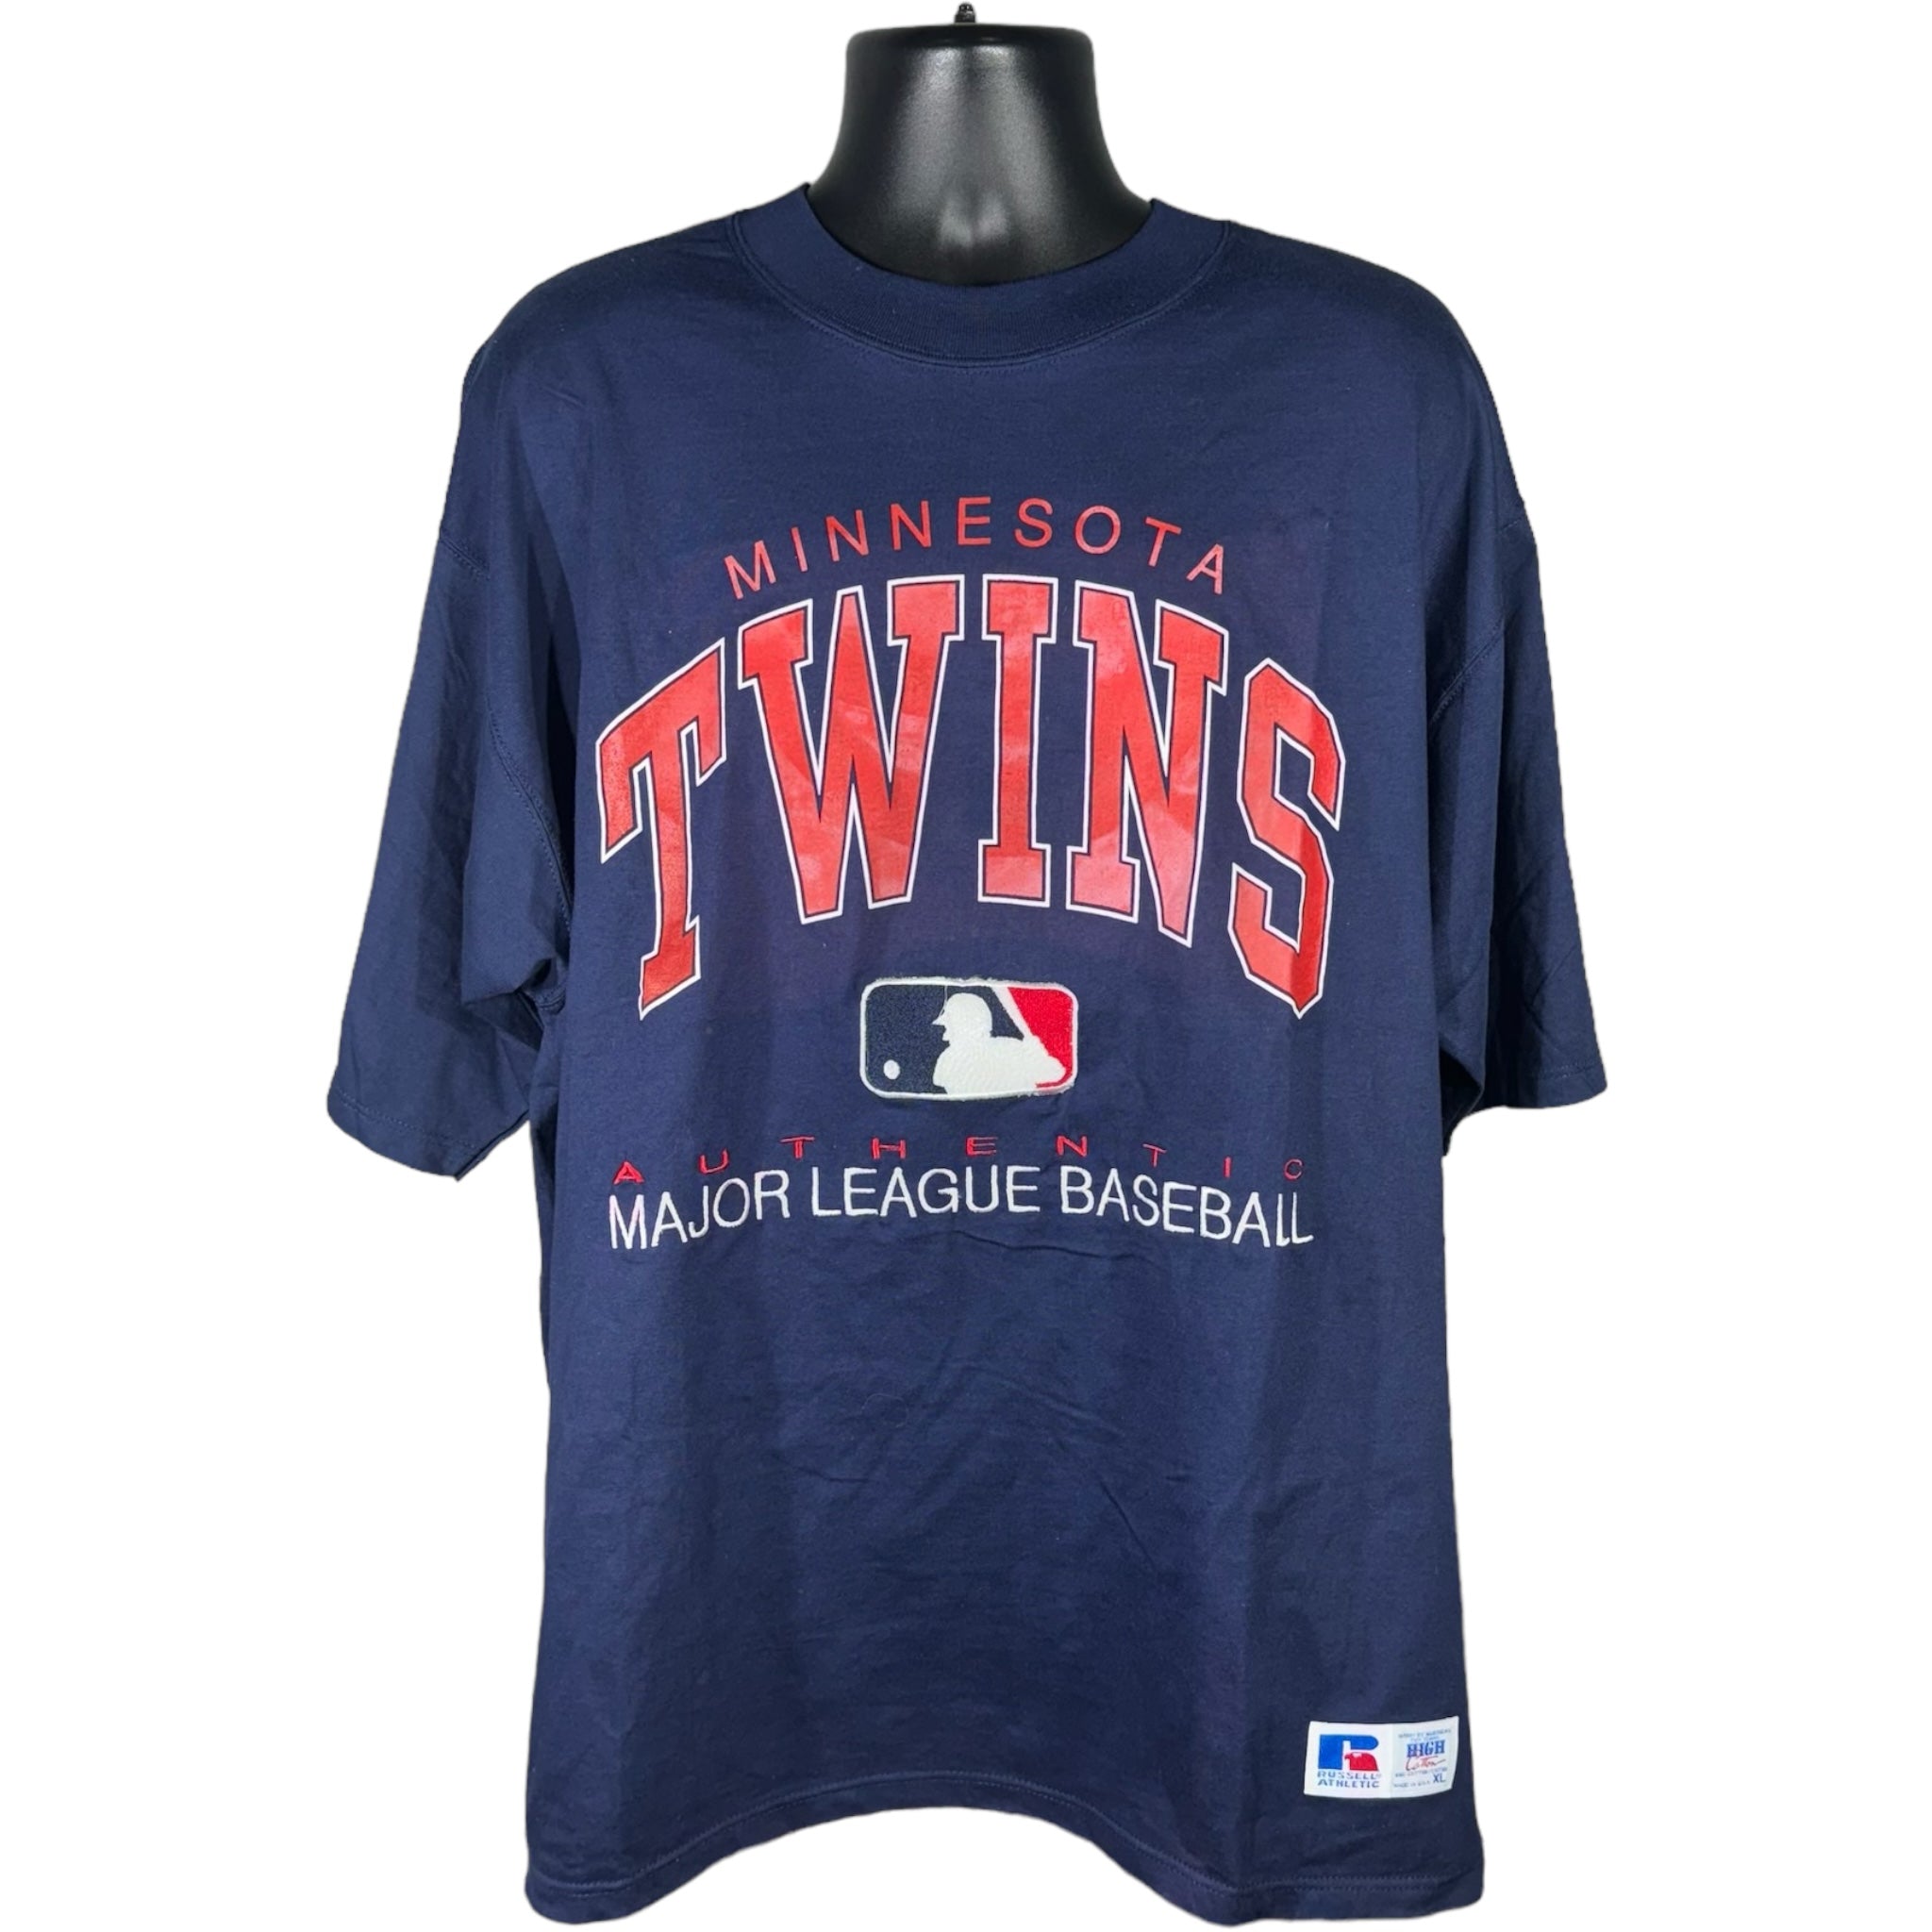 Vintage Minnesota Twins Baseball Tee